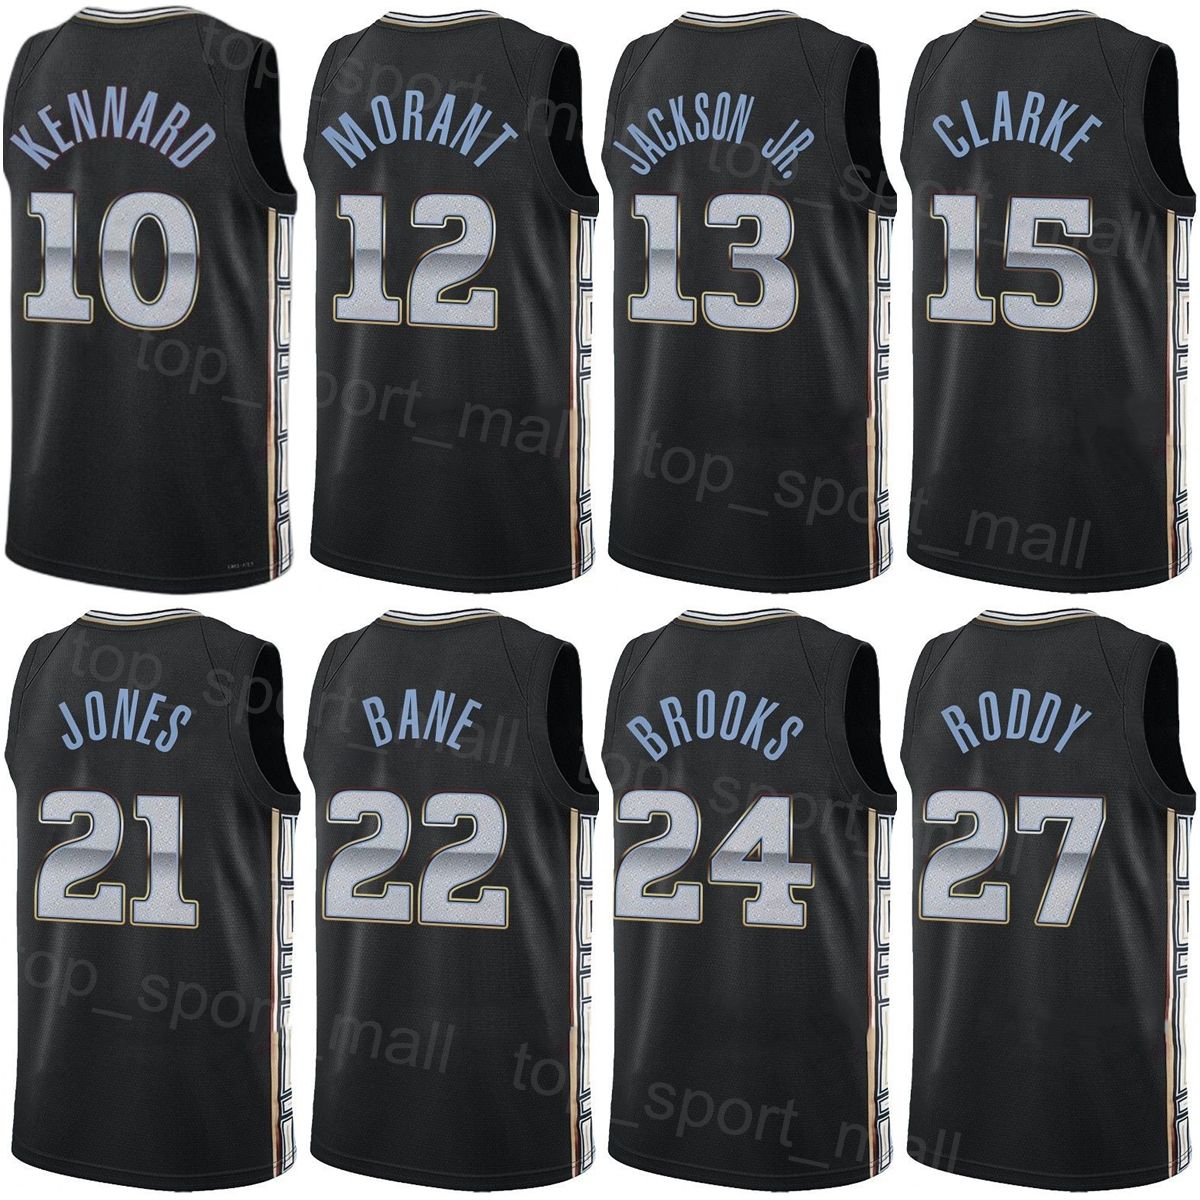 Memphis Grizzlies 21/22 Desmond Bane City Edition Authentic swingman jersey  med